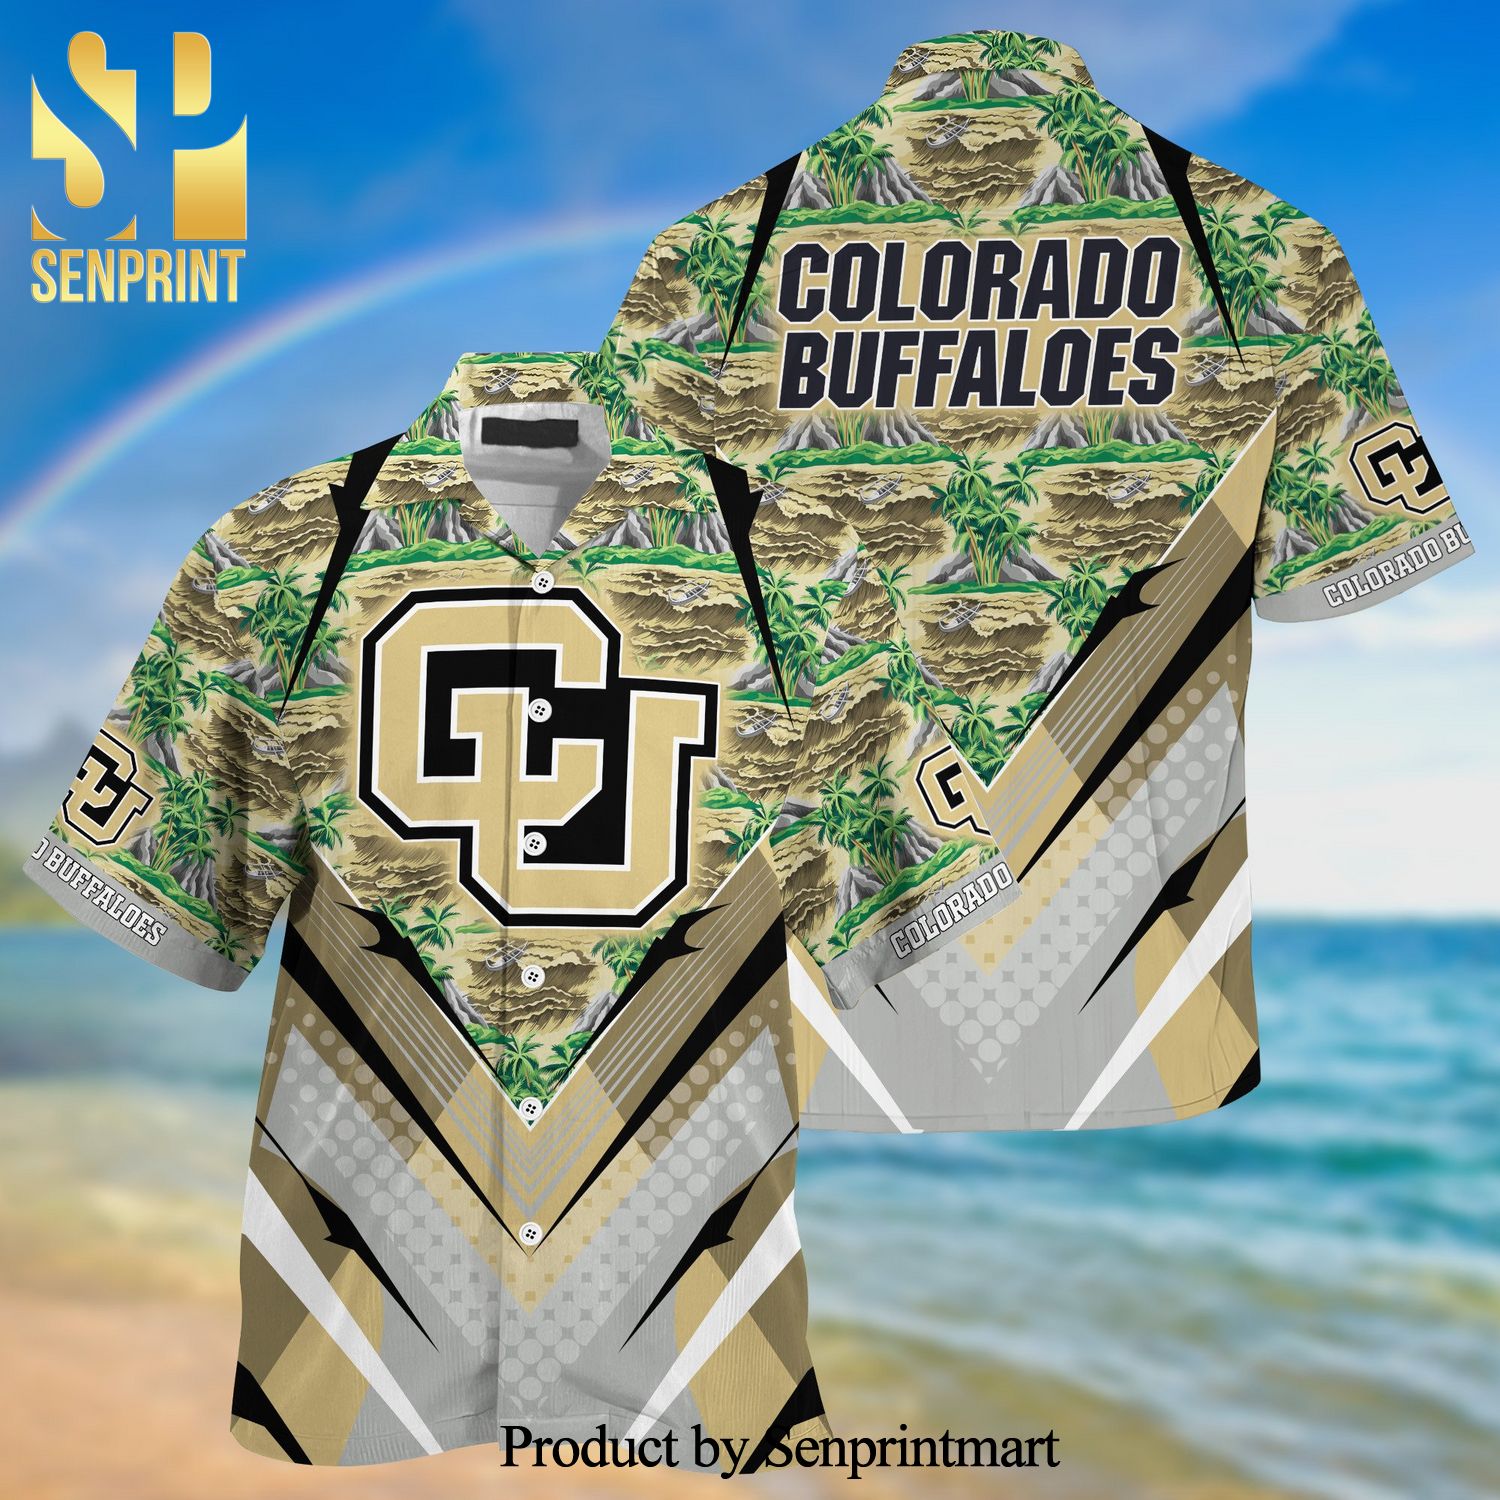 Colorado Buffaloes Summer Hawaiian Shirt And Shorts For Sports Fans This Season